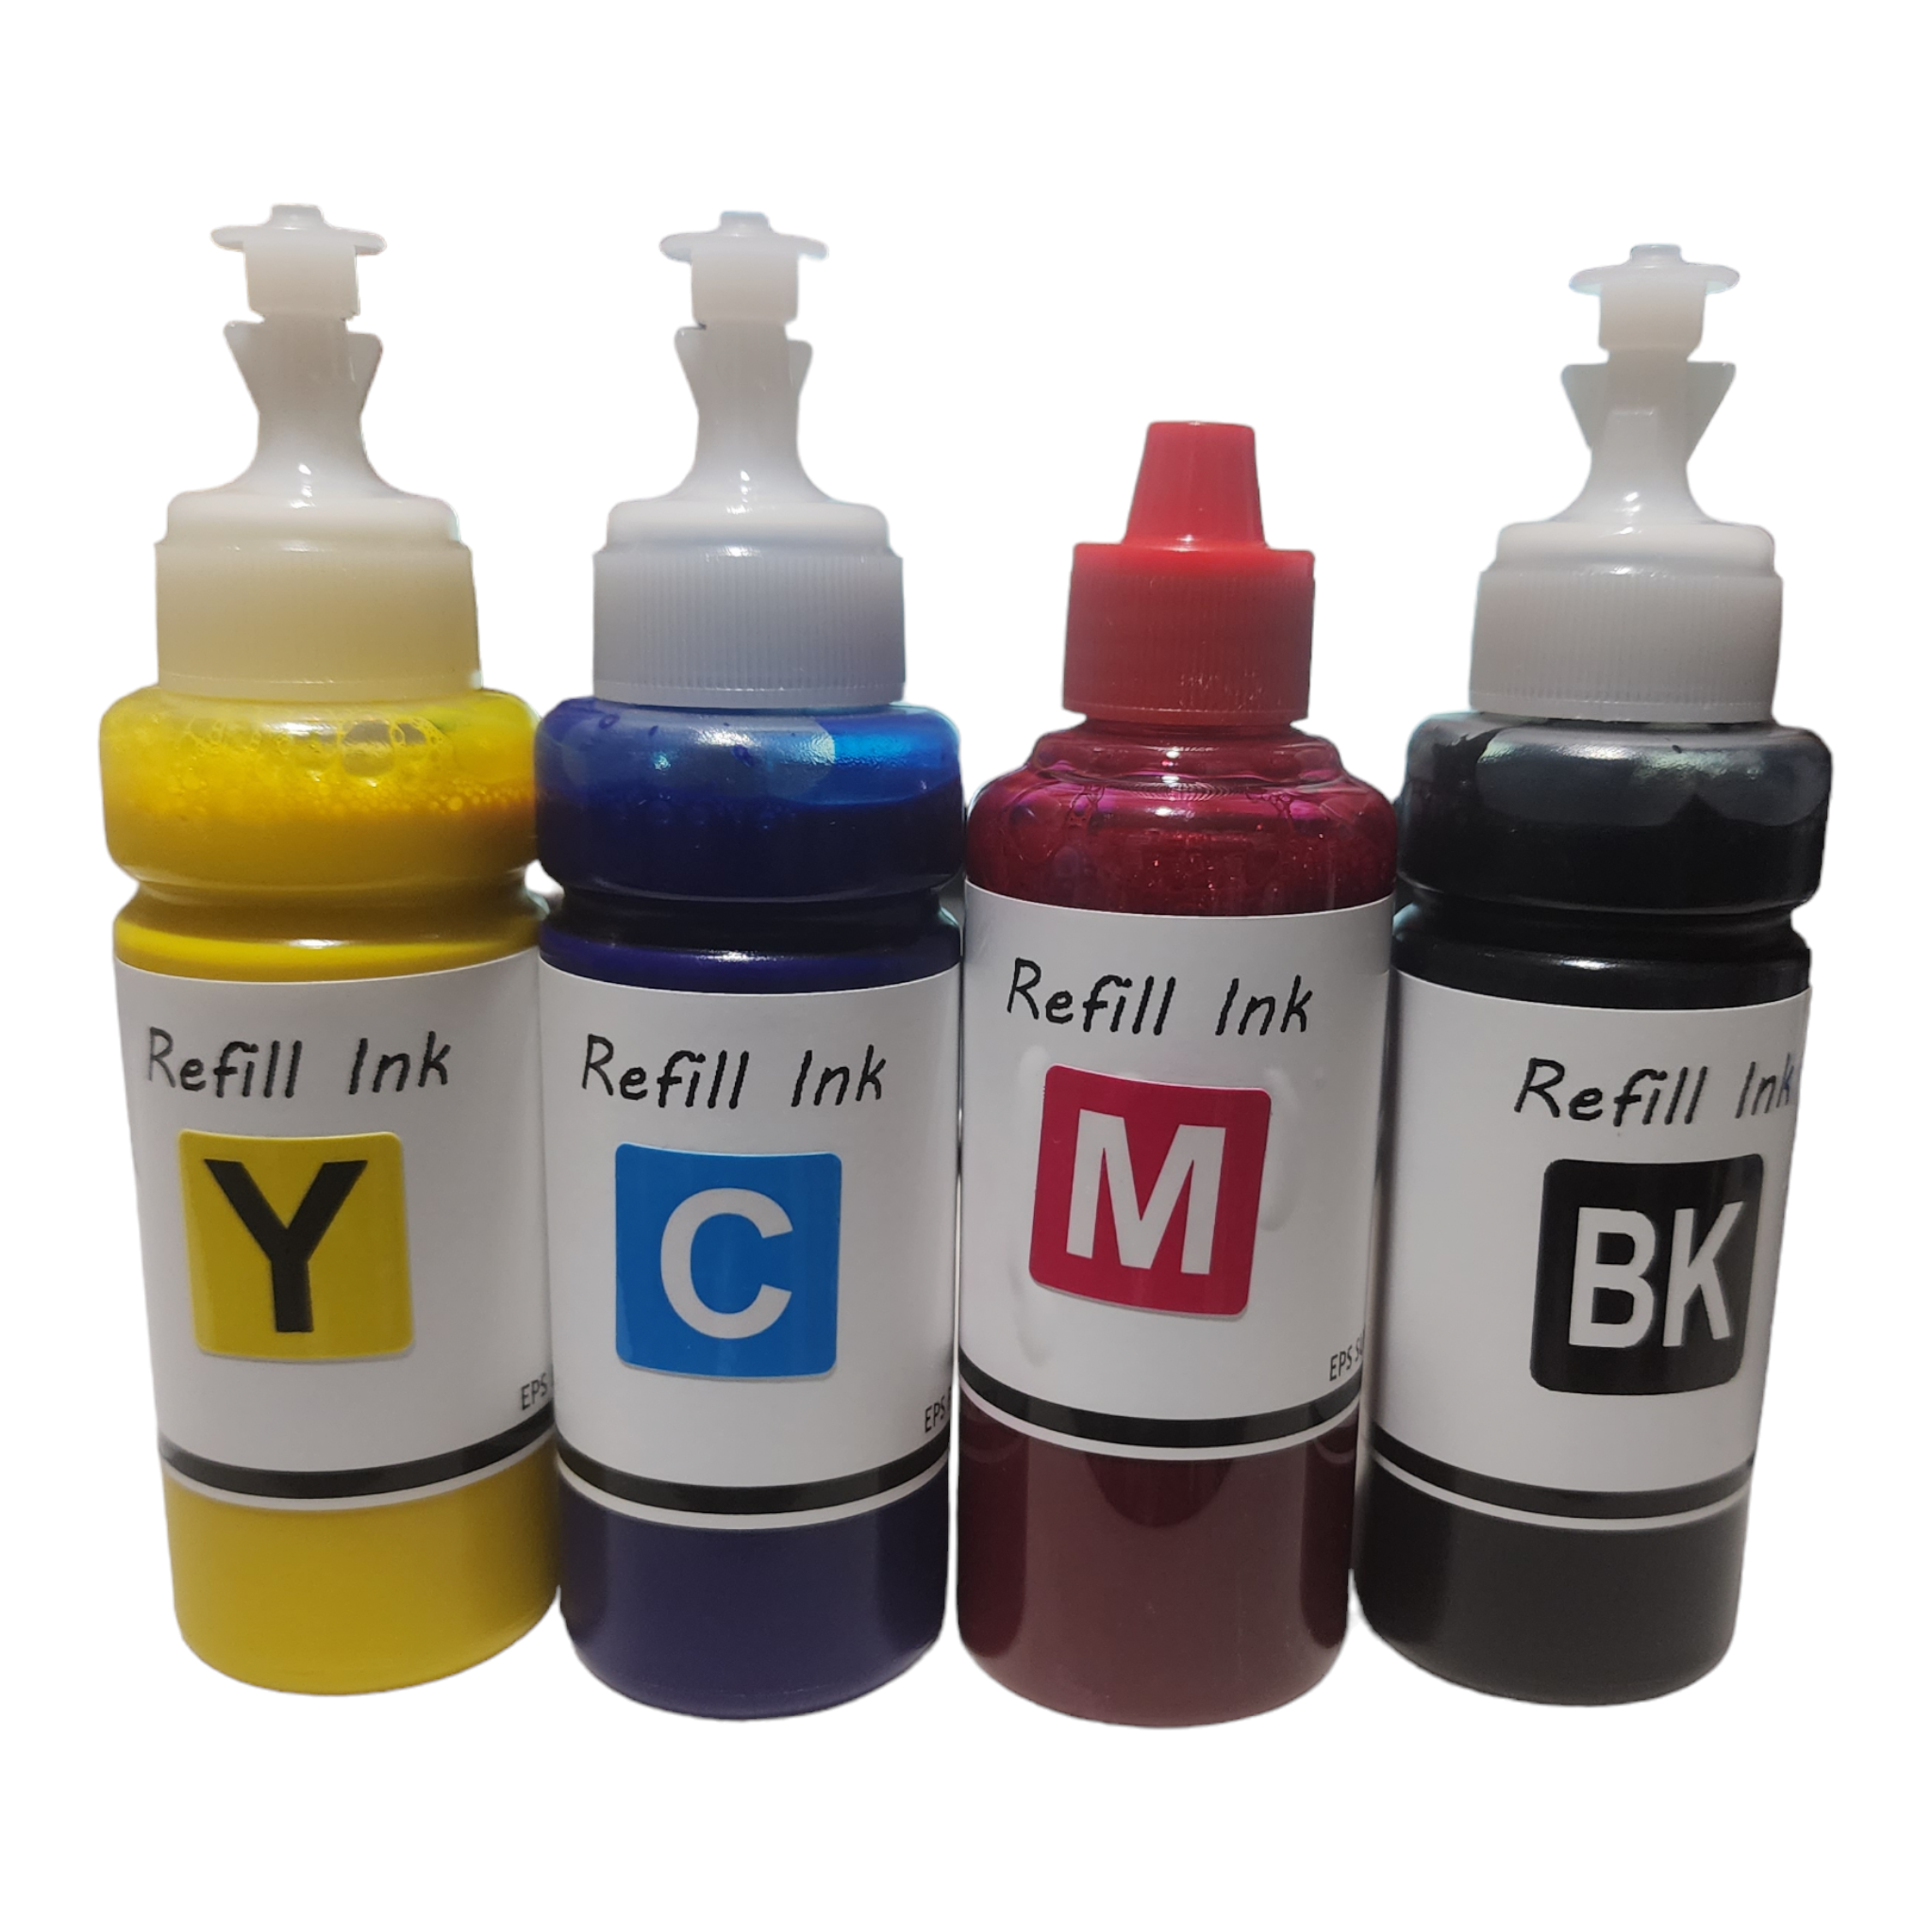 QUTHZZHY Sublimation Ink Cartridges, Empty Refillable Ink Cartridges  Compatible with WF-7720 WF-7710 WF-7620 WF-7610 WF-7210 WF-7110 WF-3620  WF-3640